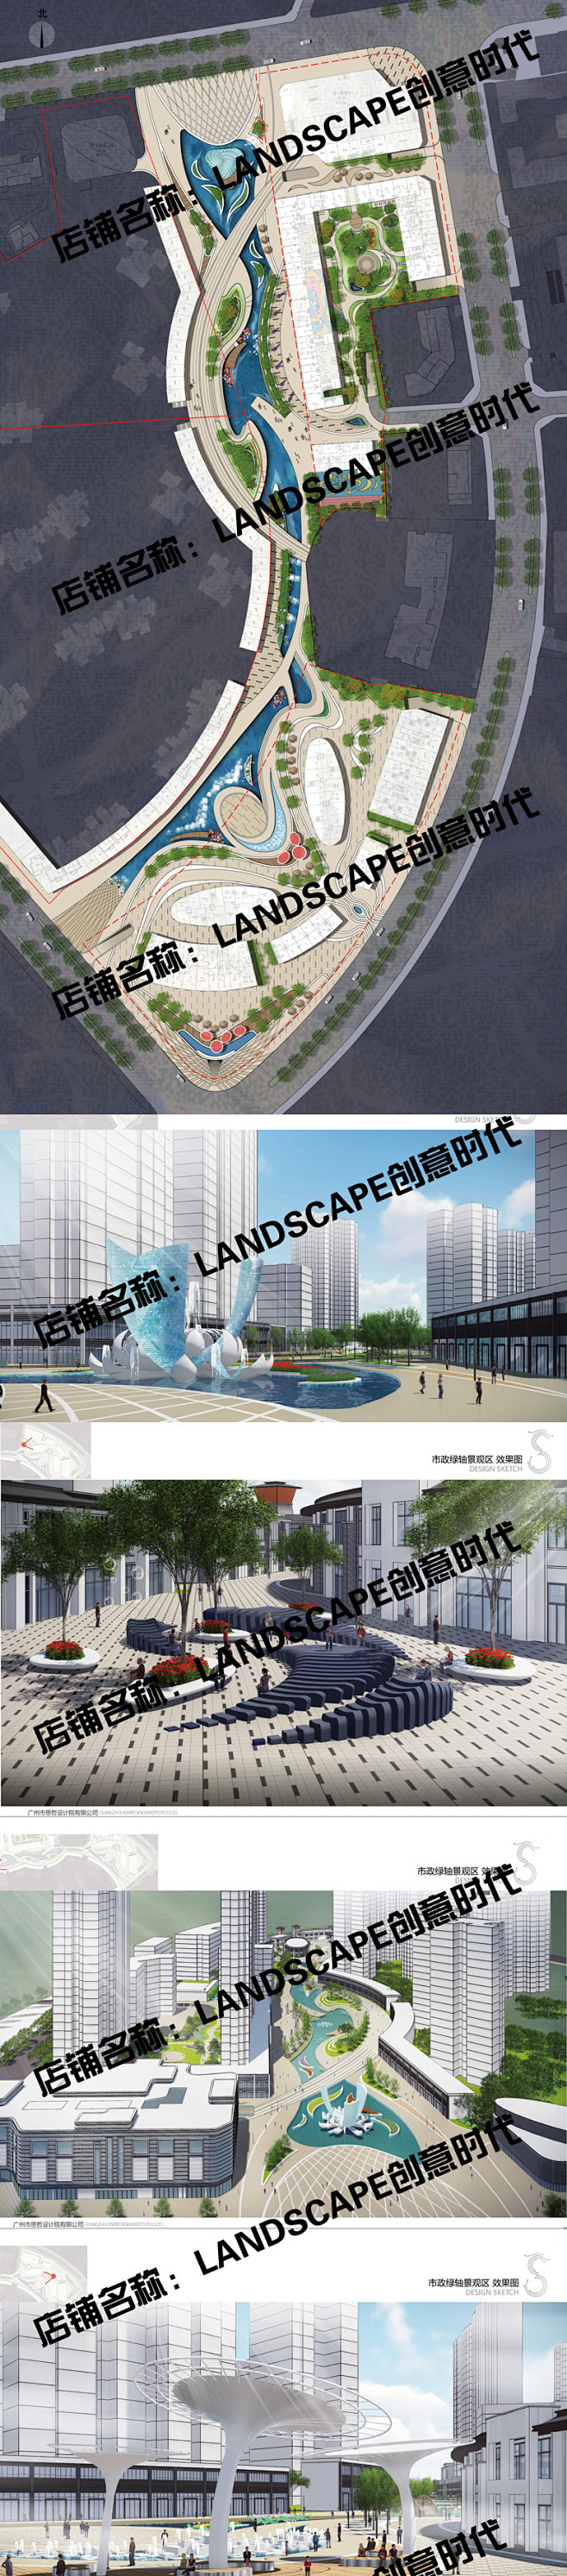 安龙县中心商贸区体化商业开发项目景观设计...